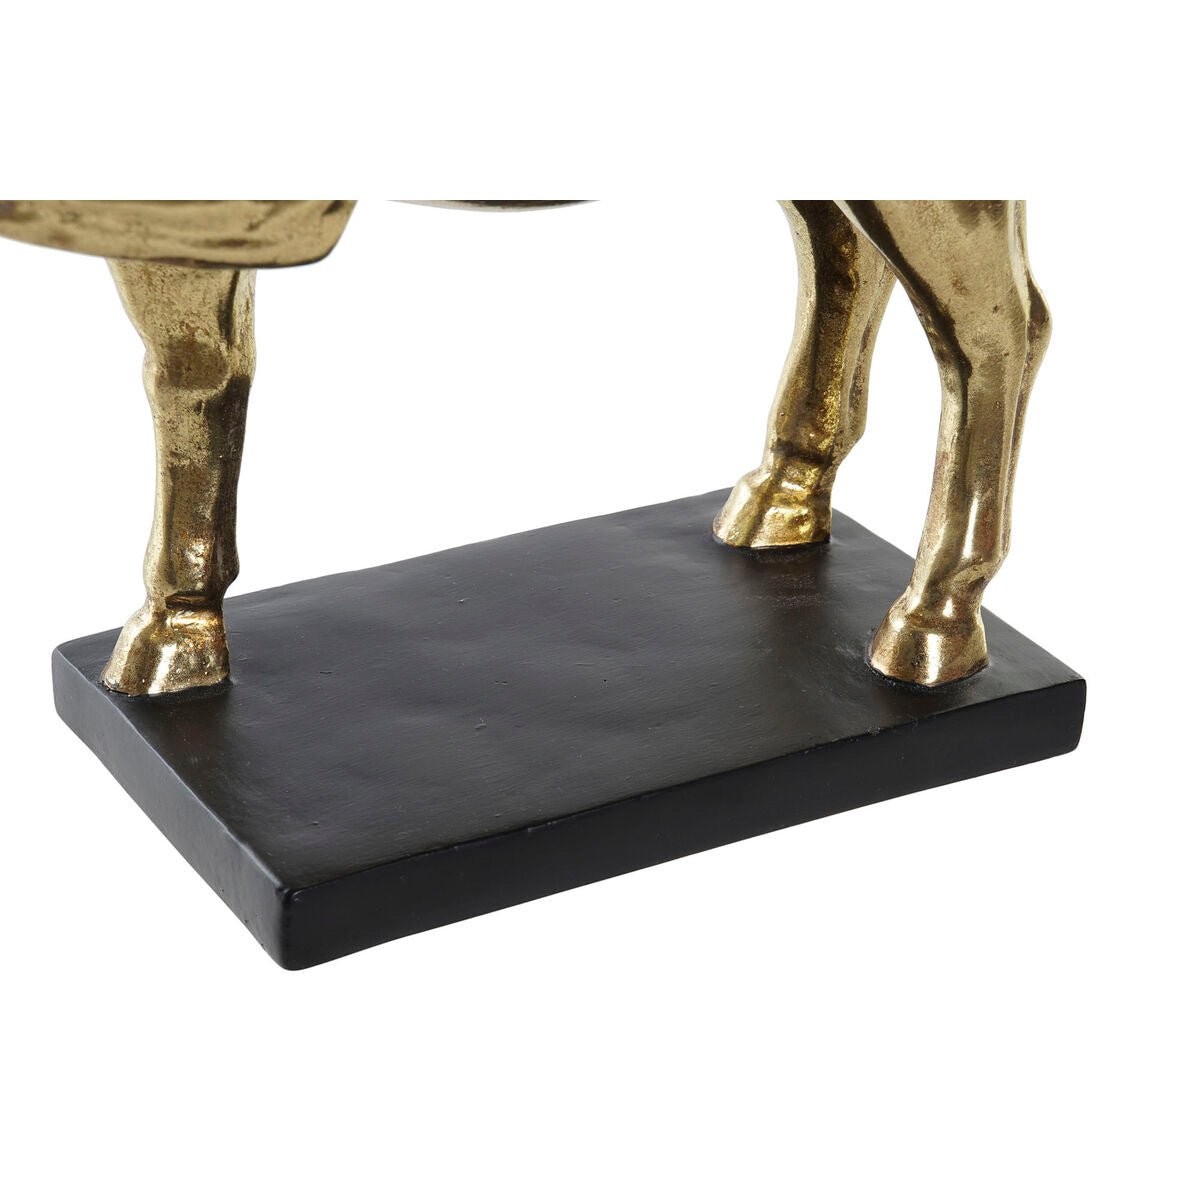 Golden Horse 29 x 9 x 25 cm